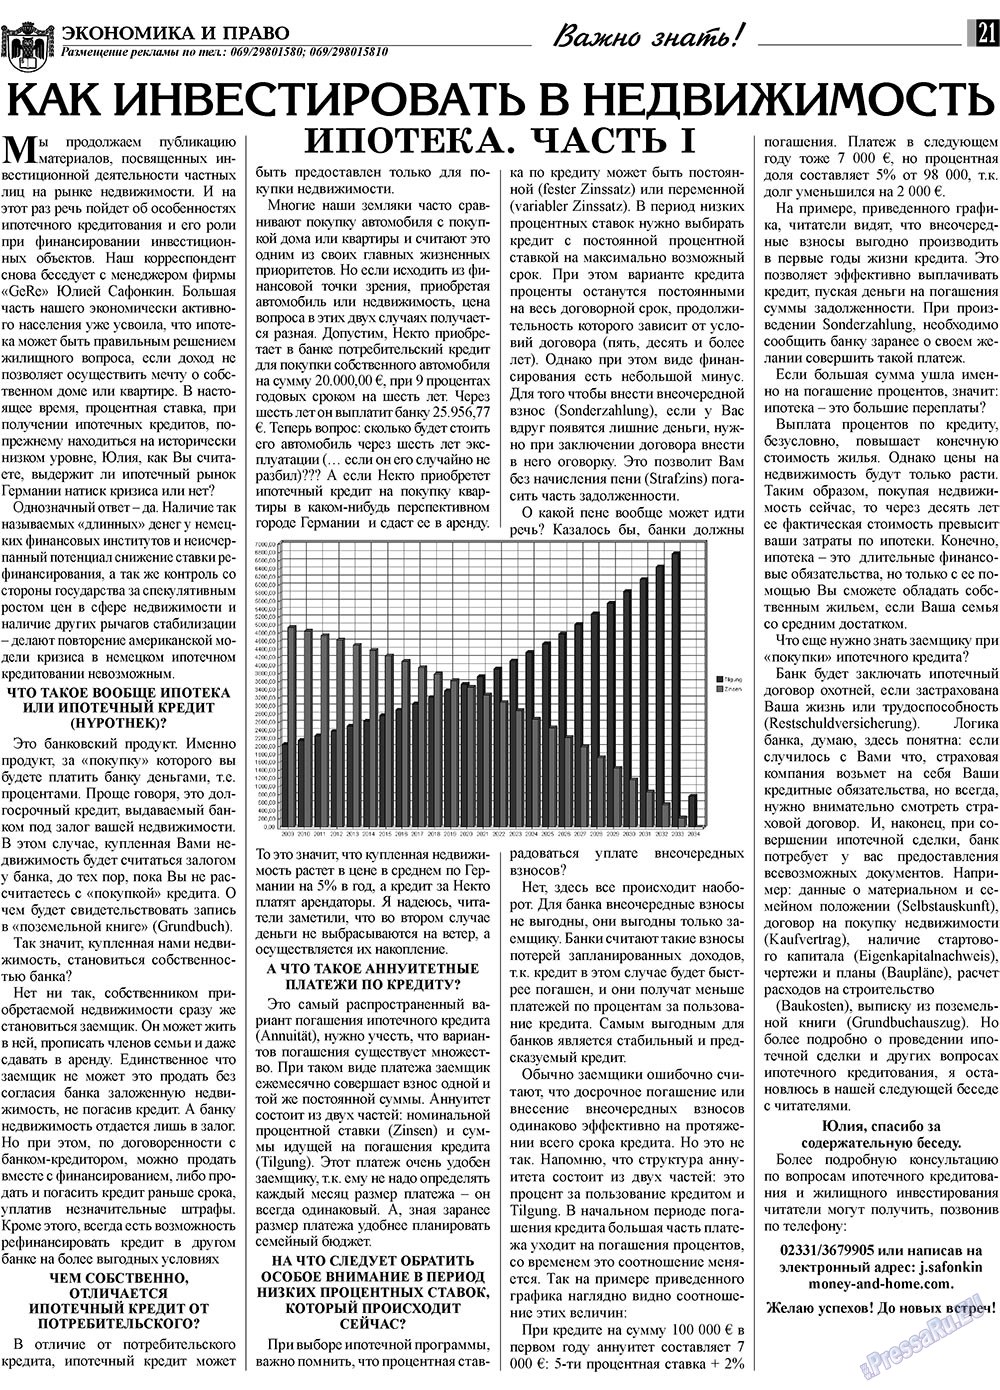 Экономика и право, газета. 2009 №12 стр.21